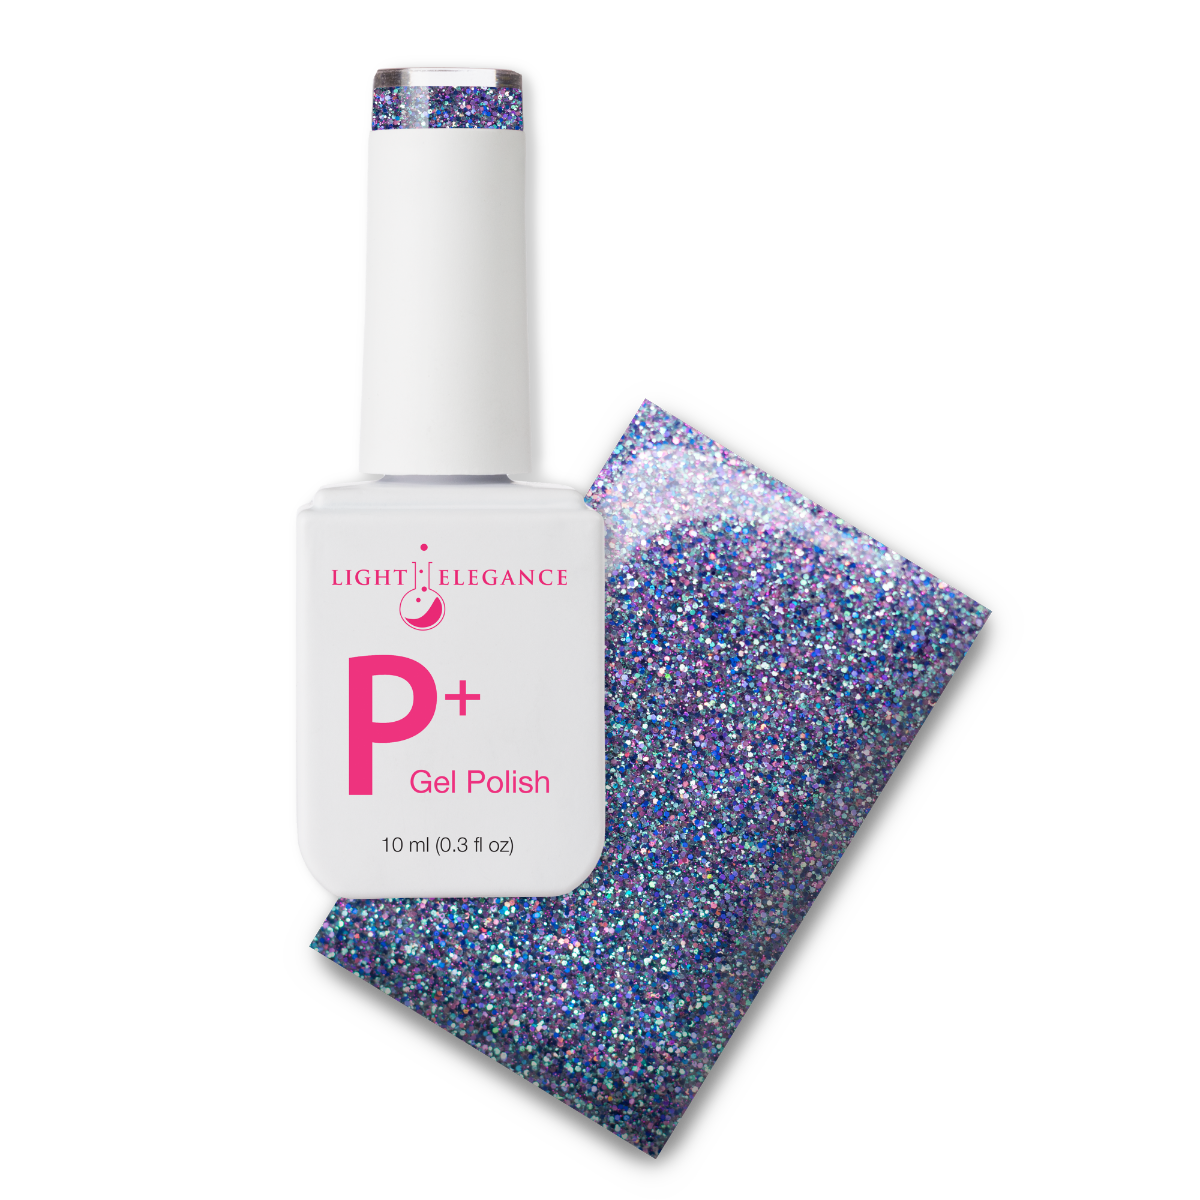 Light Elegance P+ Soak Off Glitter Gel - Tough Act to Follow :: New Packaging